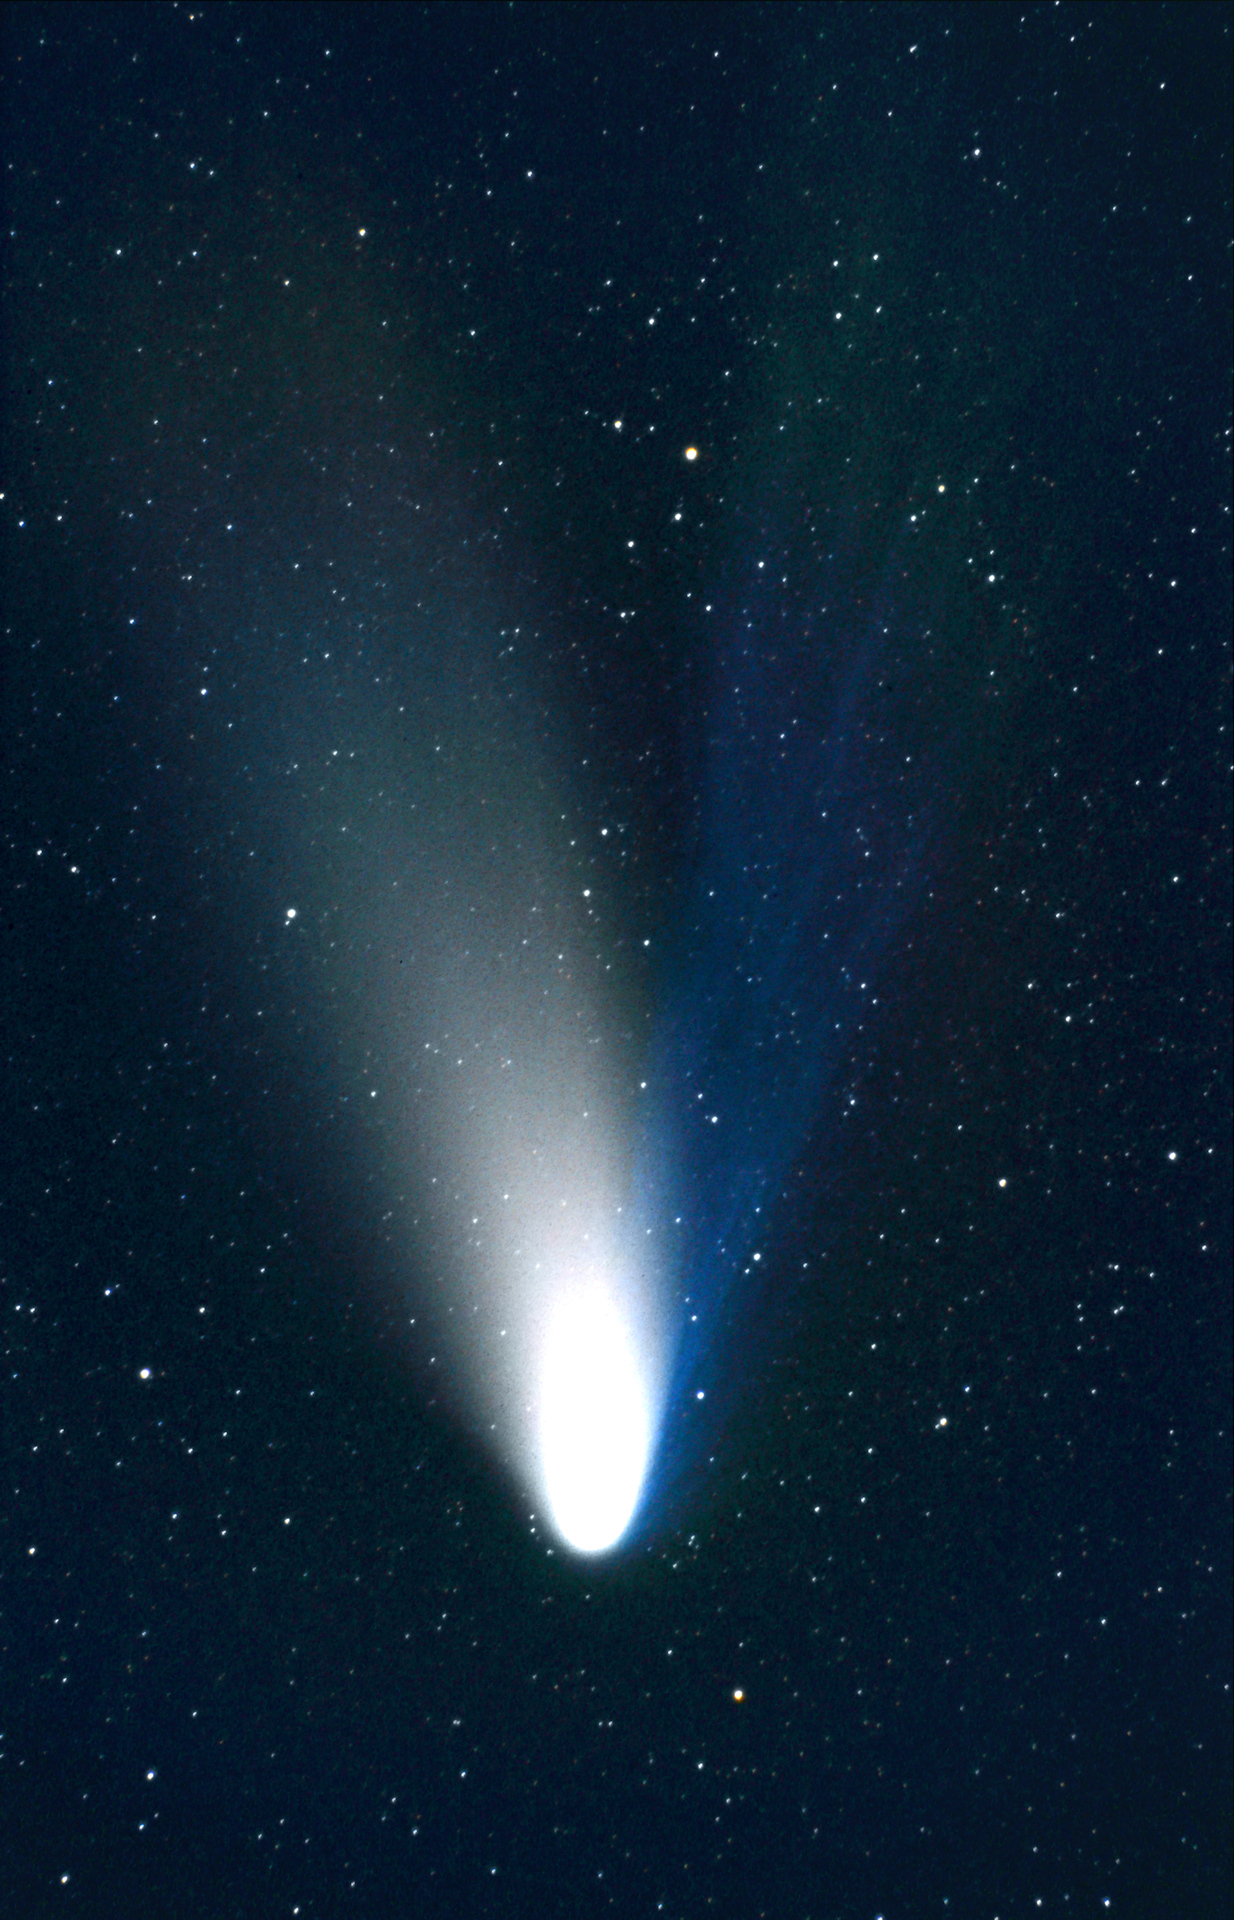 Kometen en meteoren